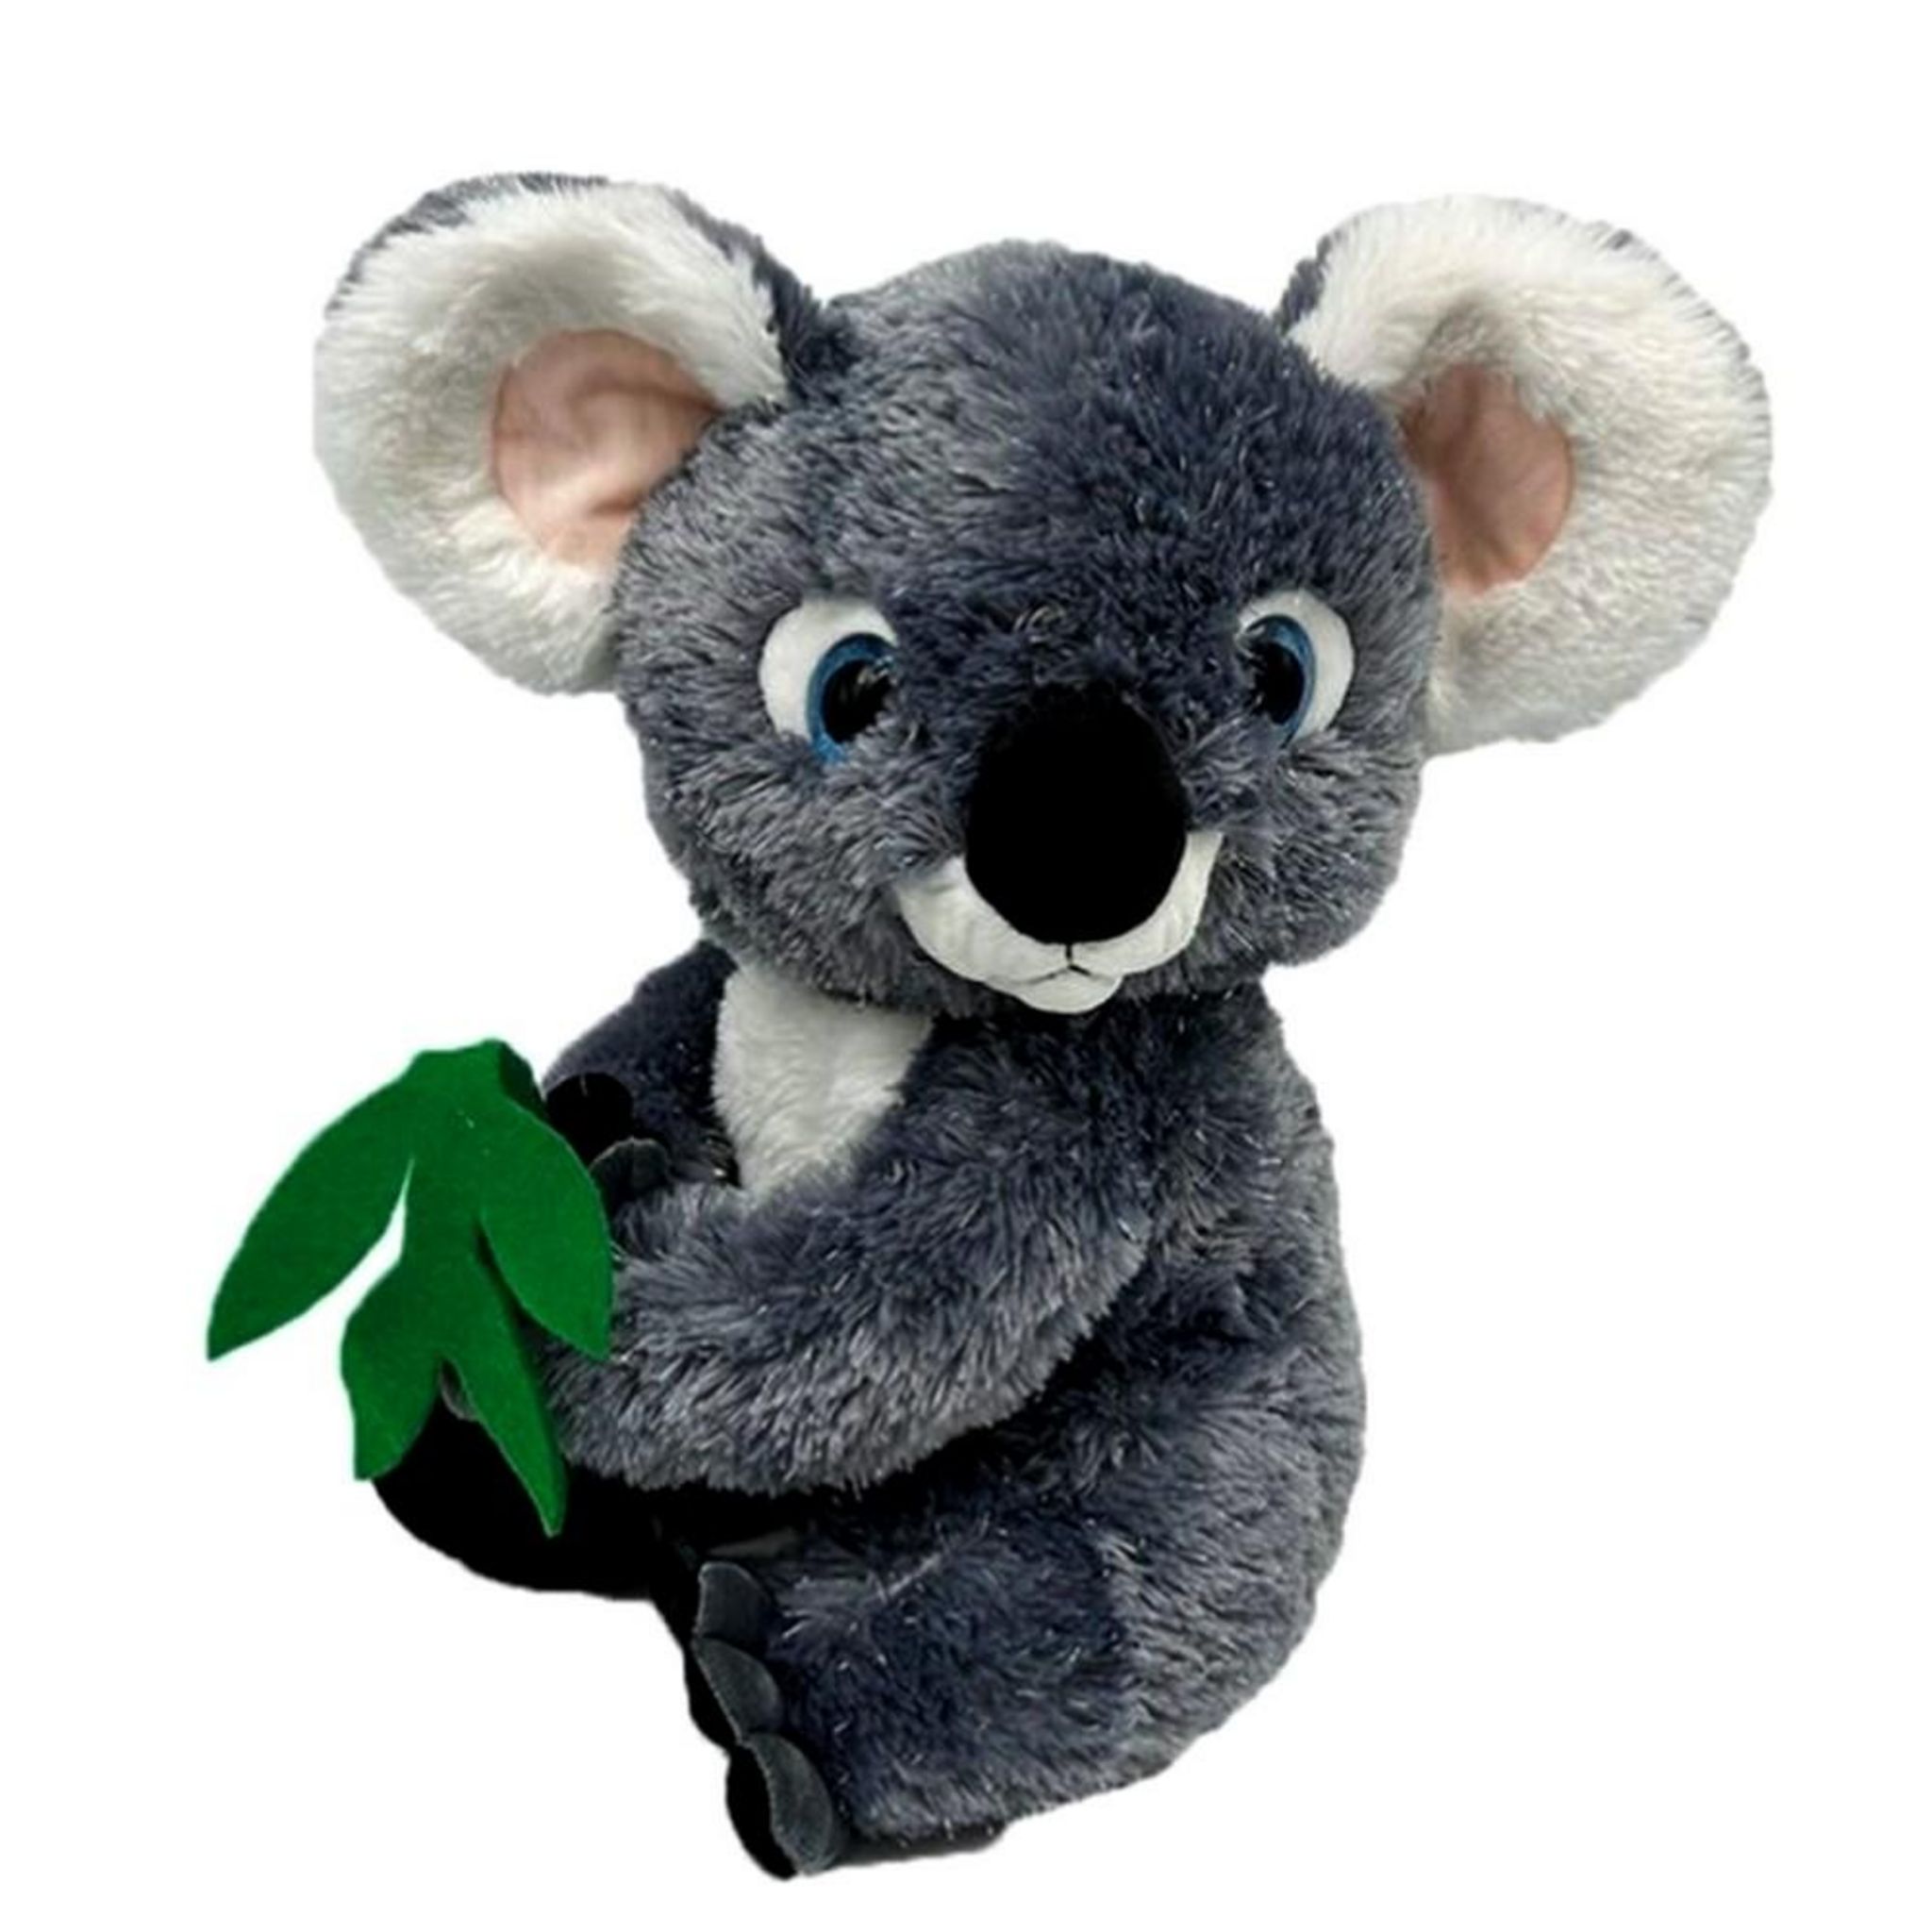 Peluche kwaly mon koala conteur d'histoires, peluche